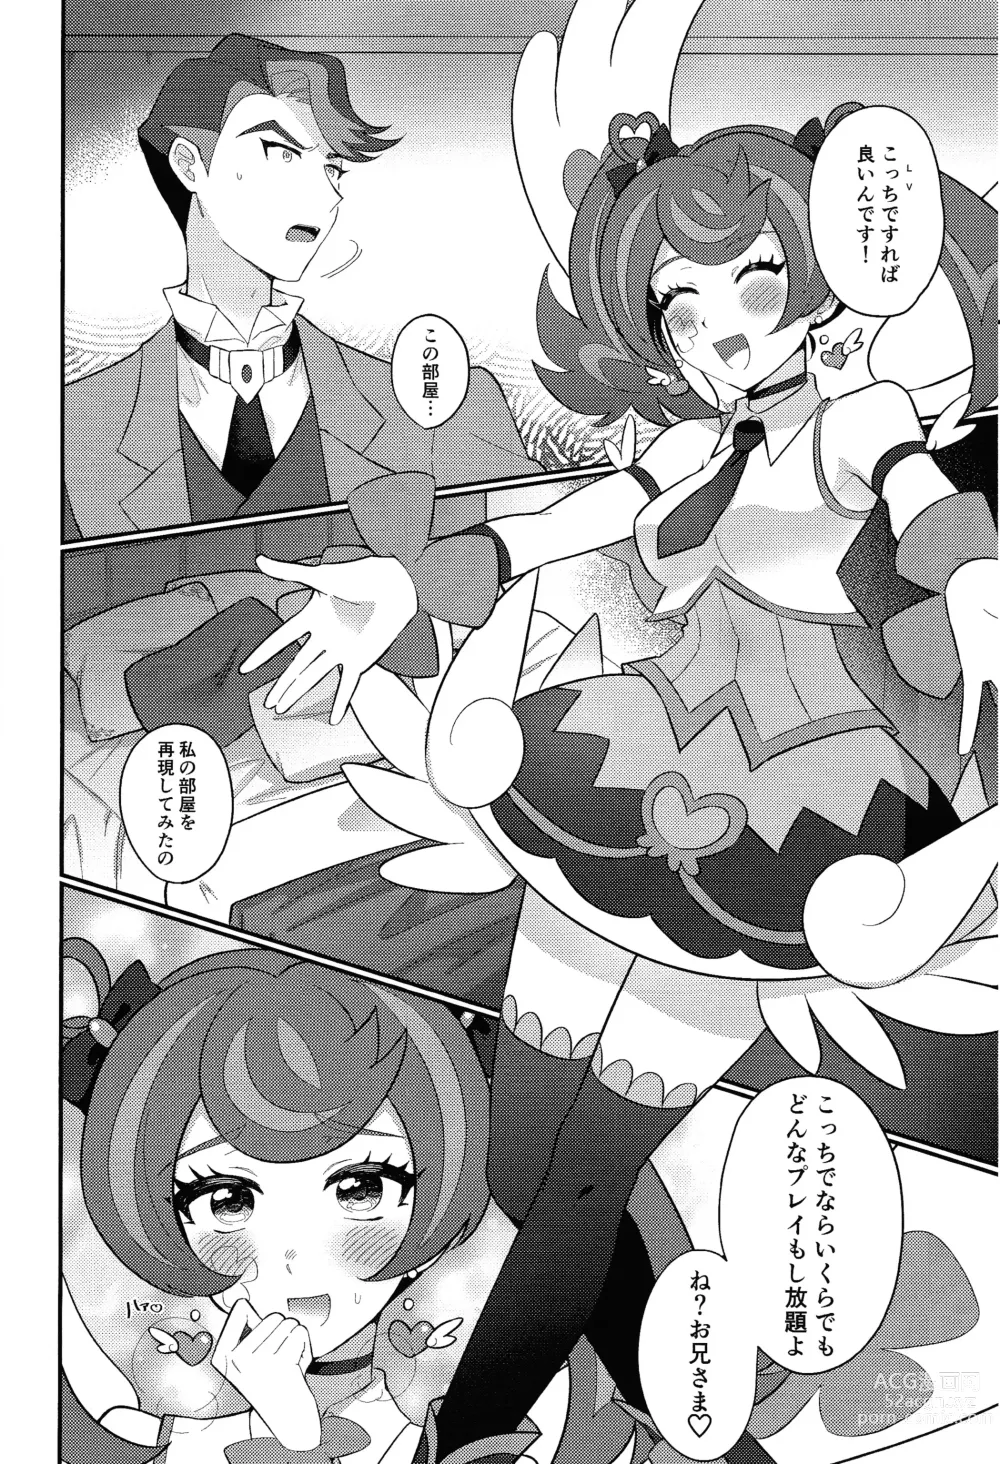 Page 23 of doujinshi Sotsugyo shite kara no o tanoshimi